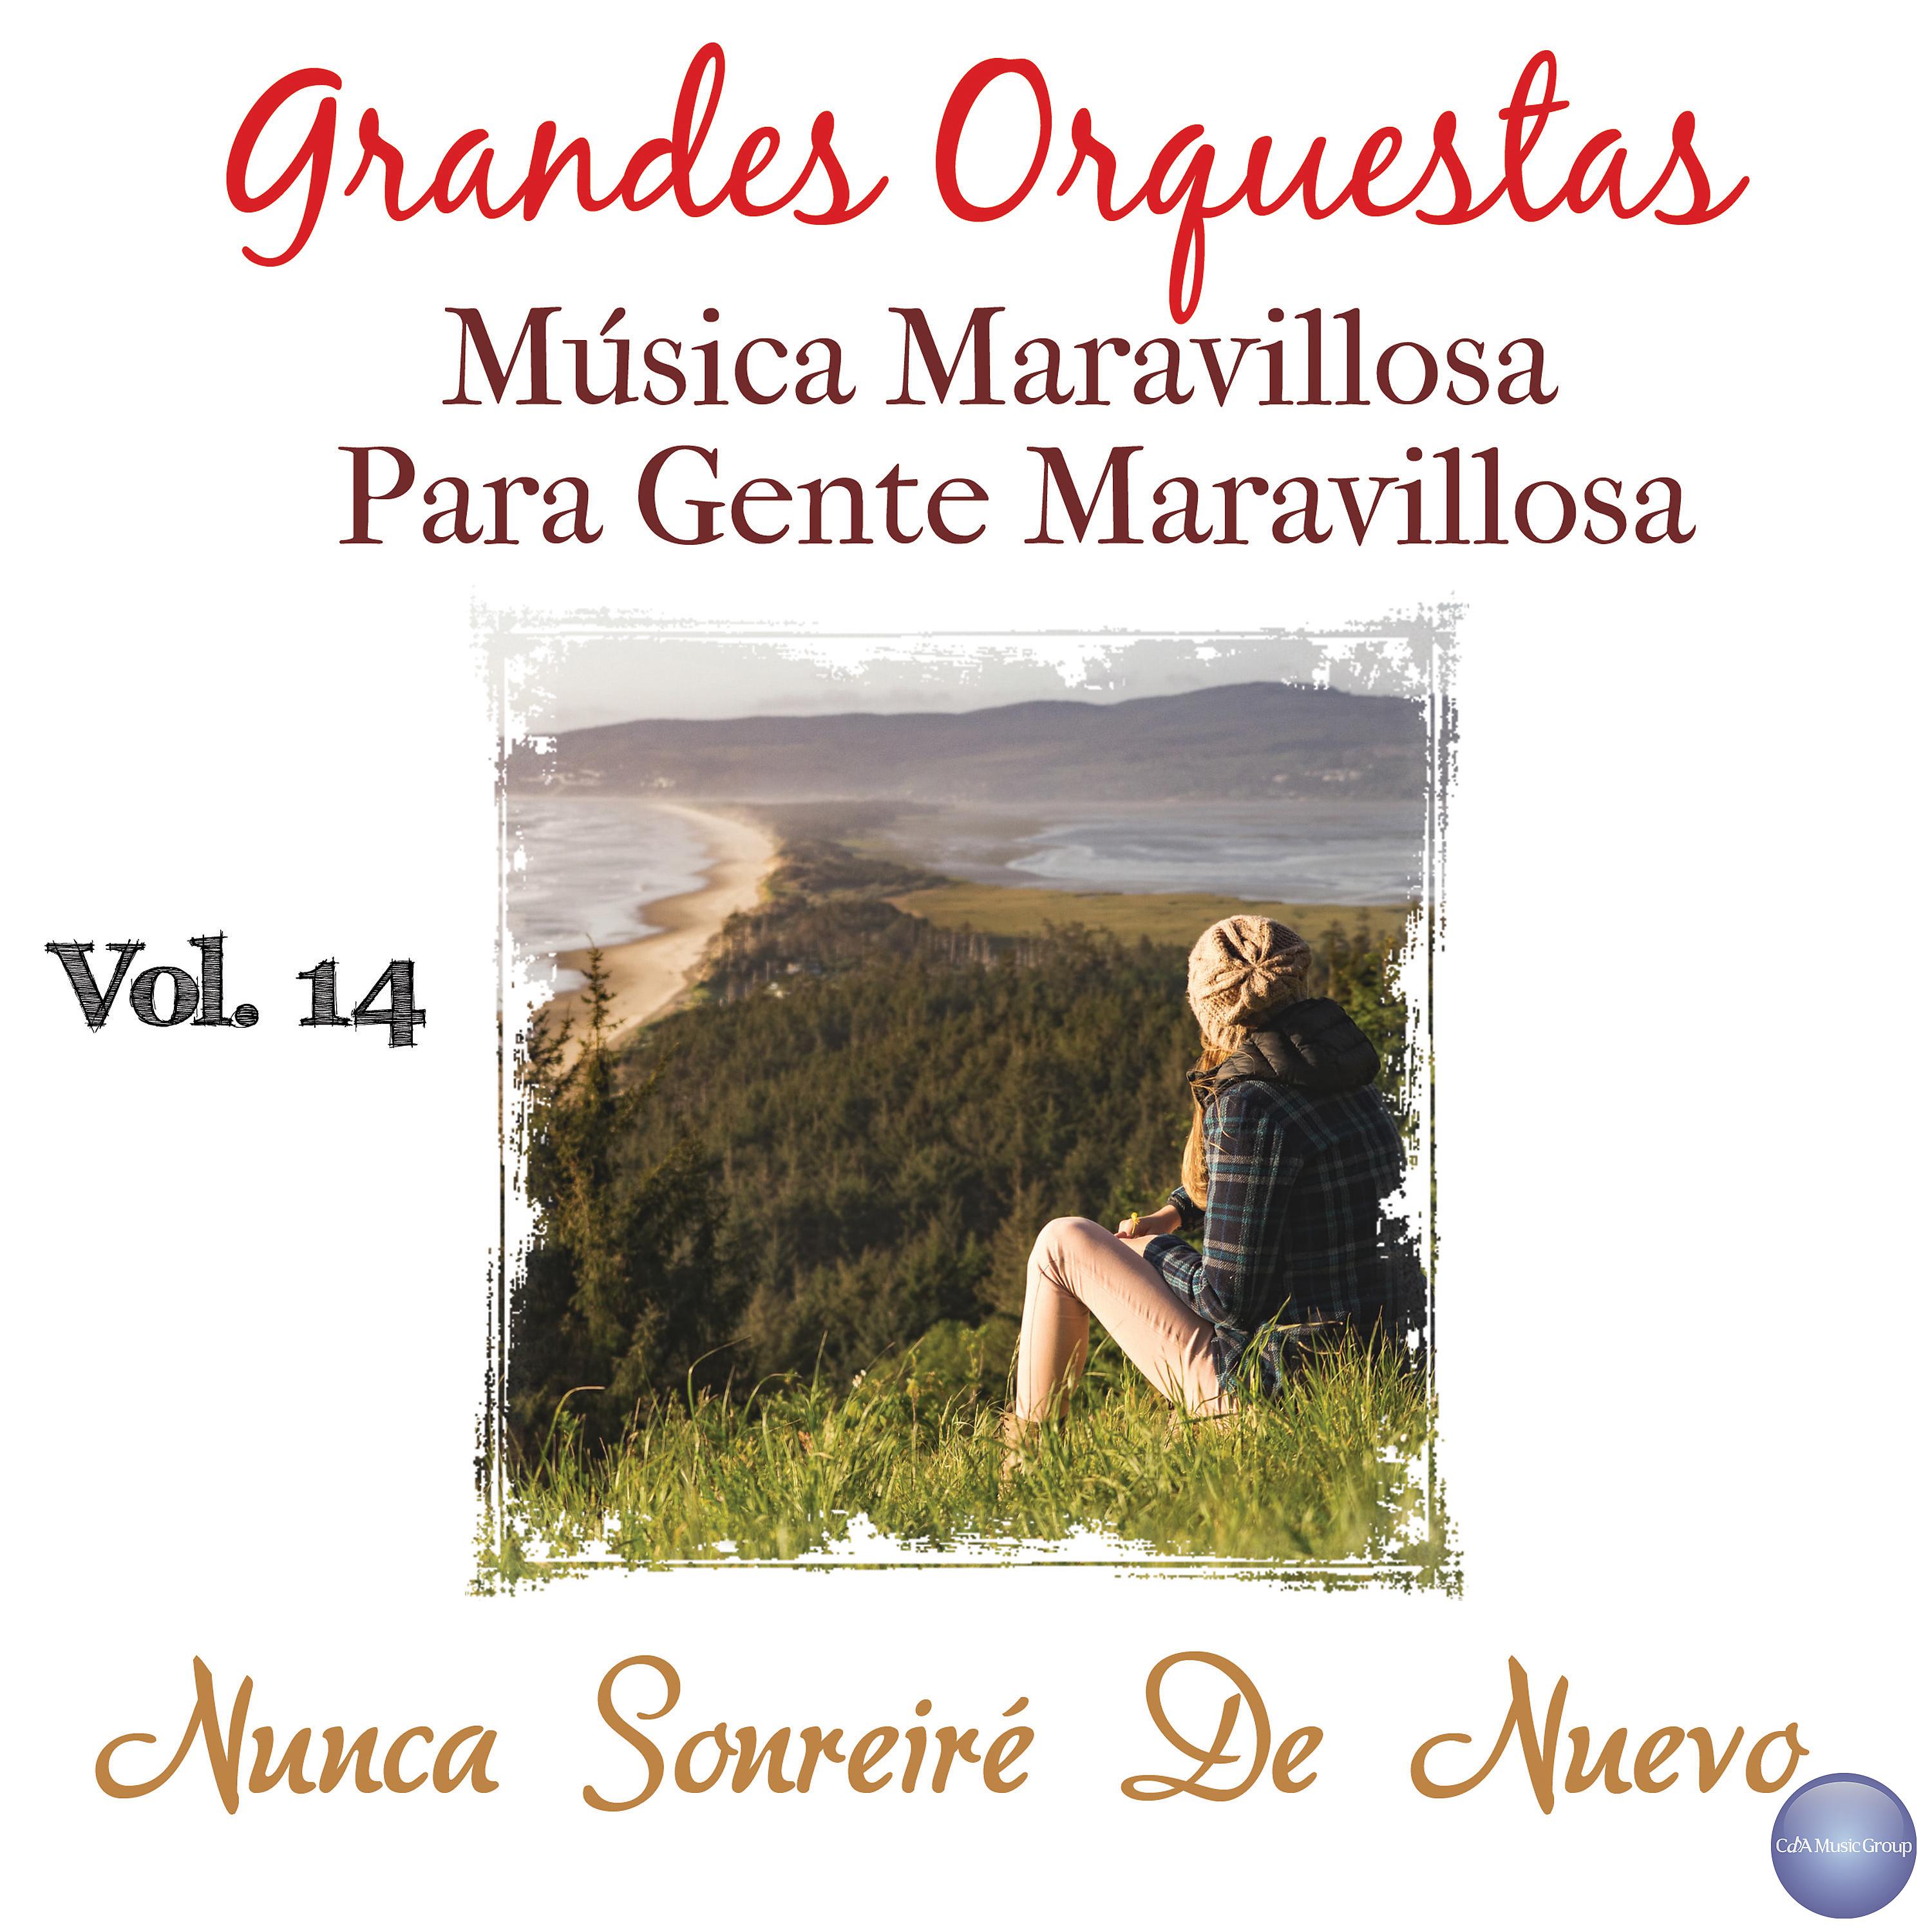 Постер альбома Grandes Orquestas - Música Maravillosa Vol. 14: Nunca Sonreiré de Nuevo